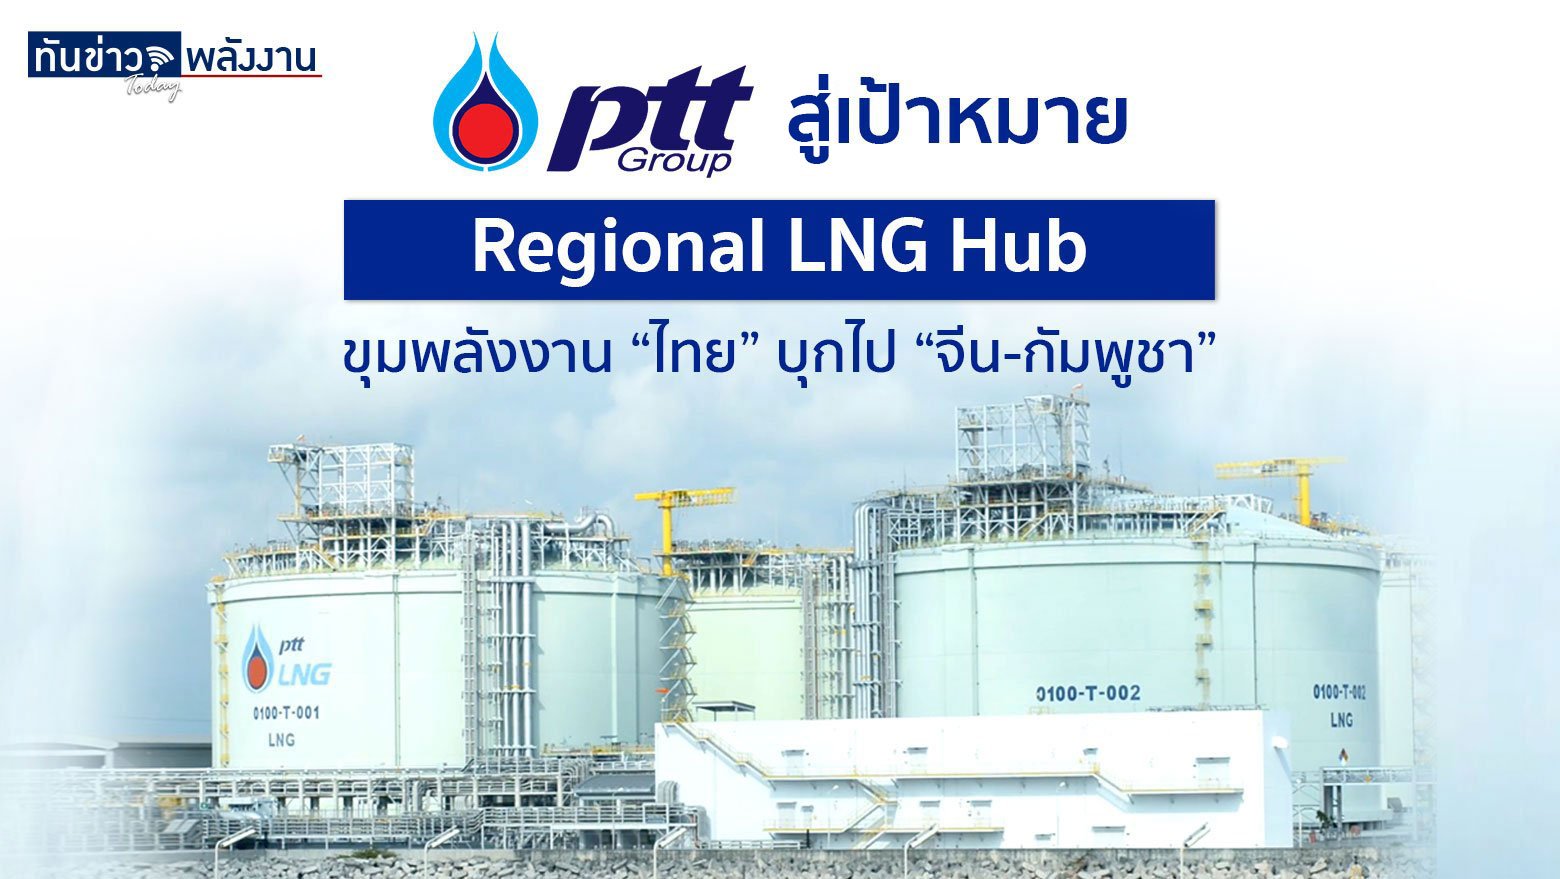 ปตท. สู่เป้าหมาย Regional LNG Hub ขุมพลังงาน “ไทย” บุกไป “จีน-กัมพูชา”